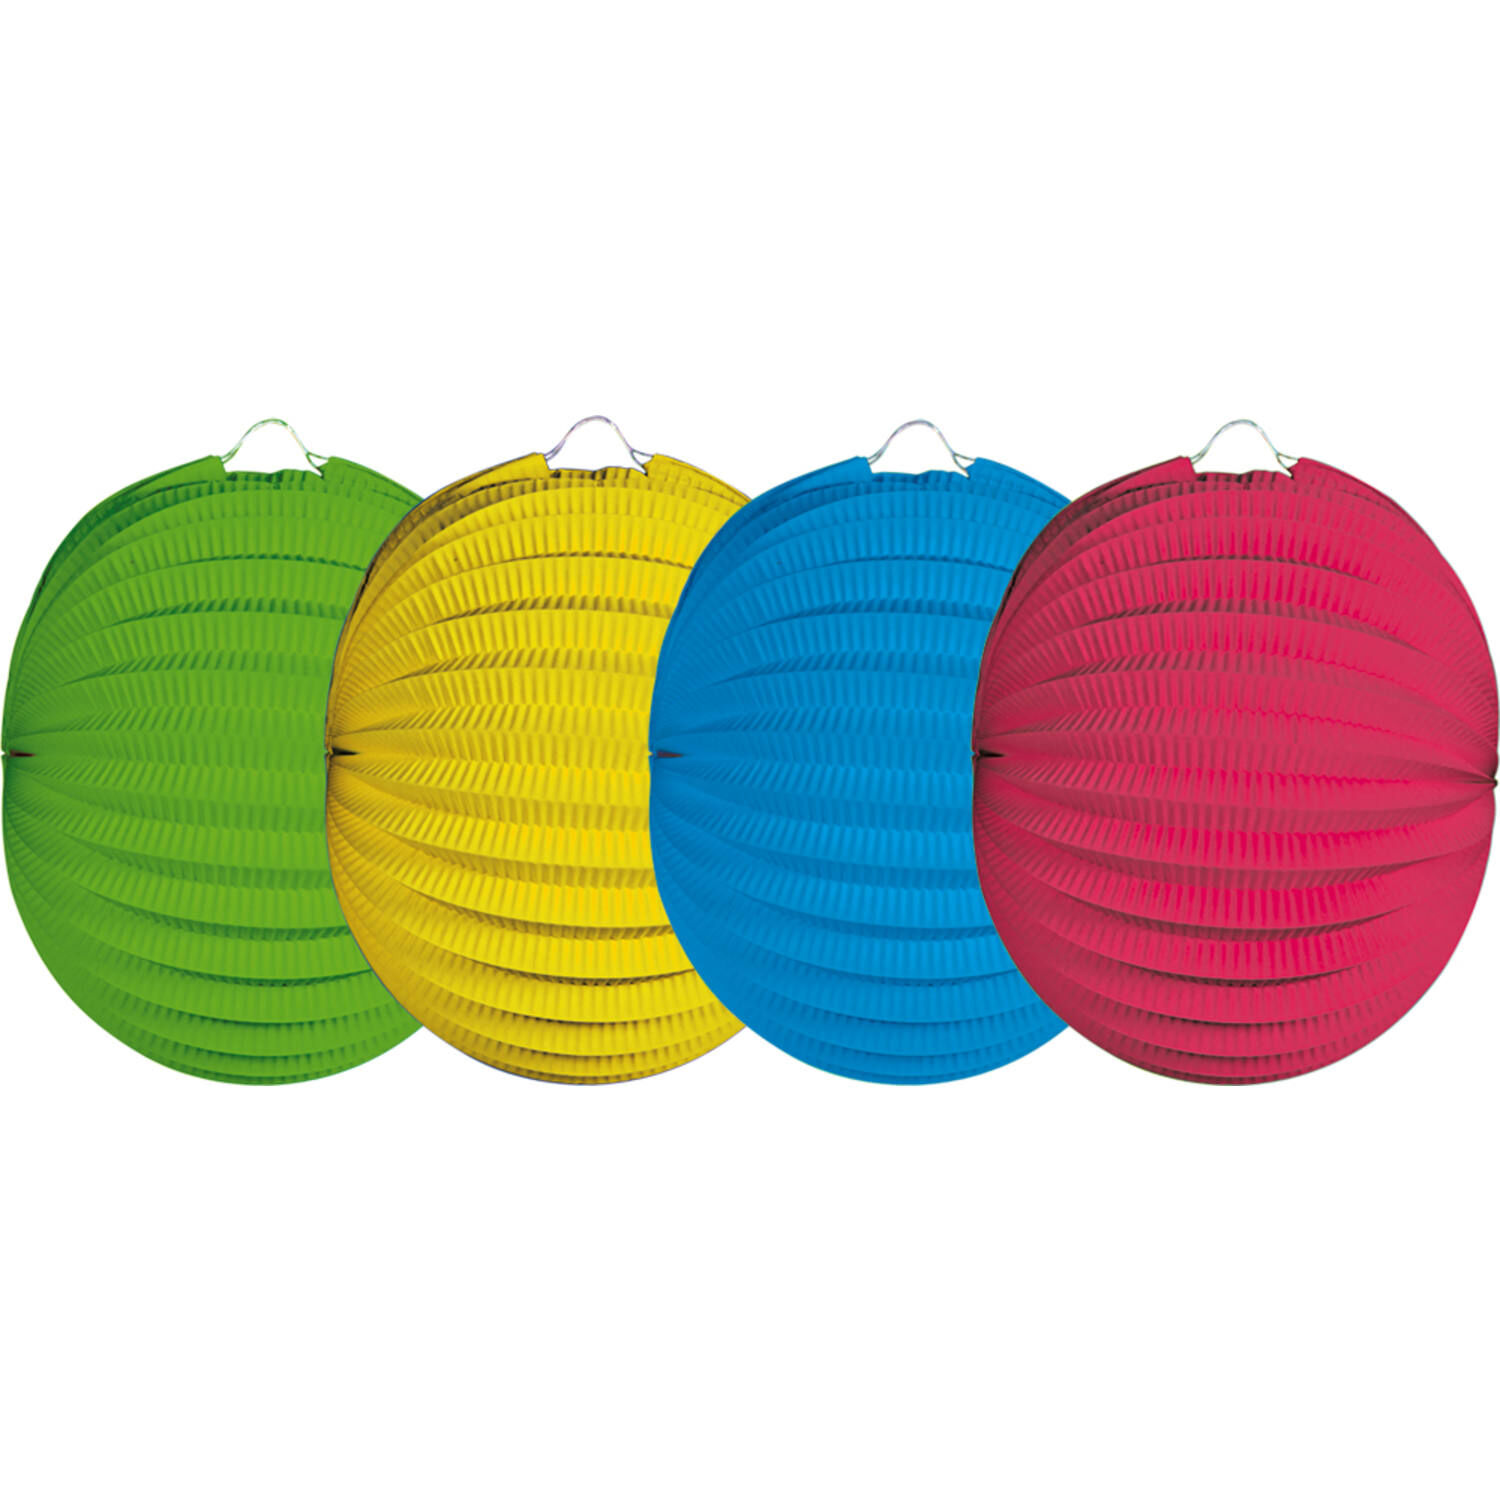 NEU Lampions bunt, 22cm Durchmesser, 12 Stck in verschiedenen Farben